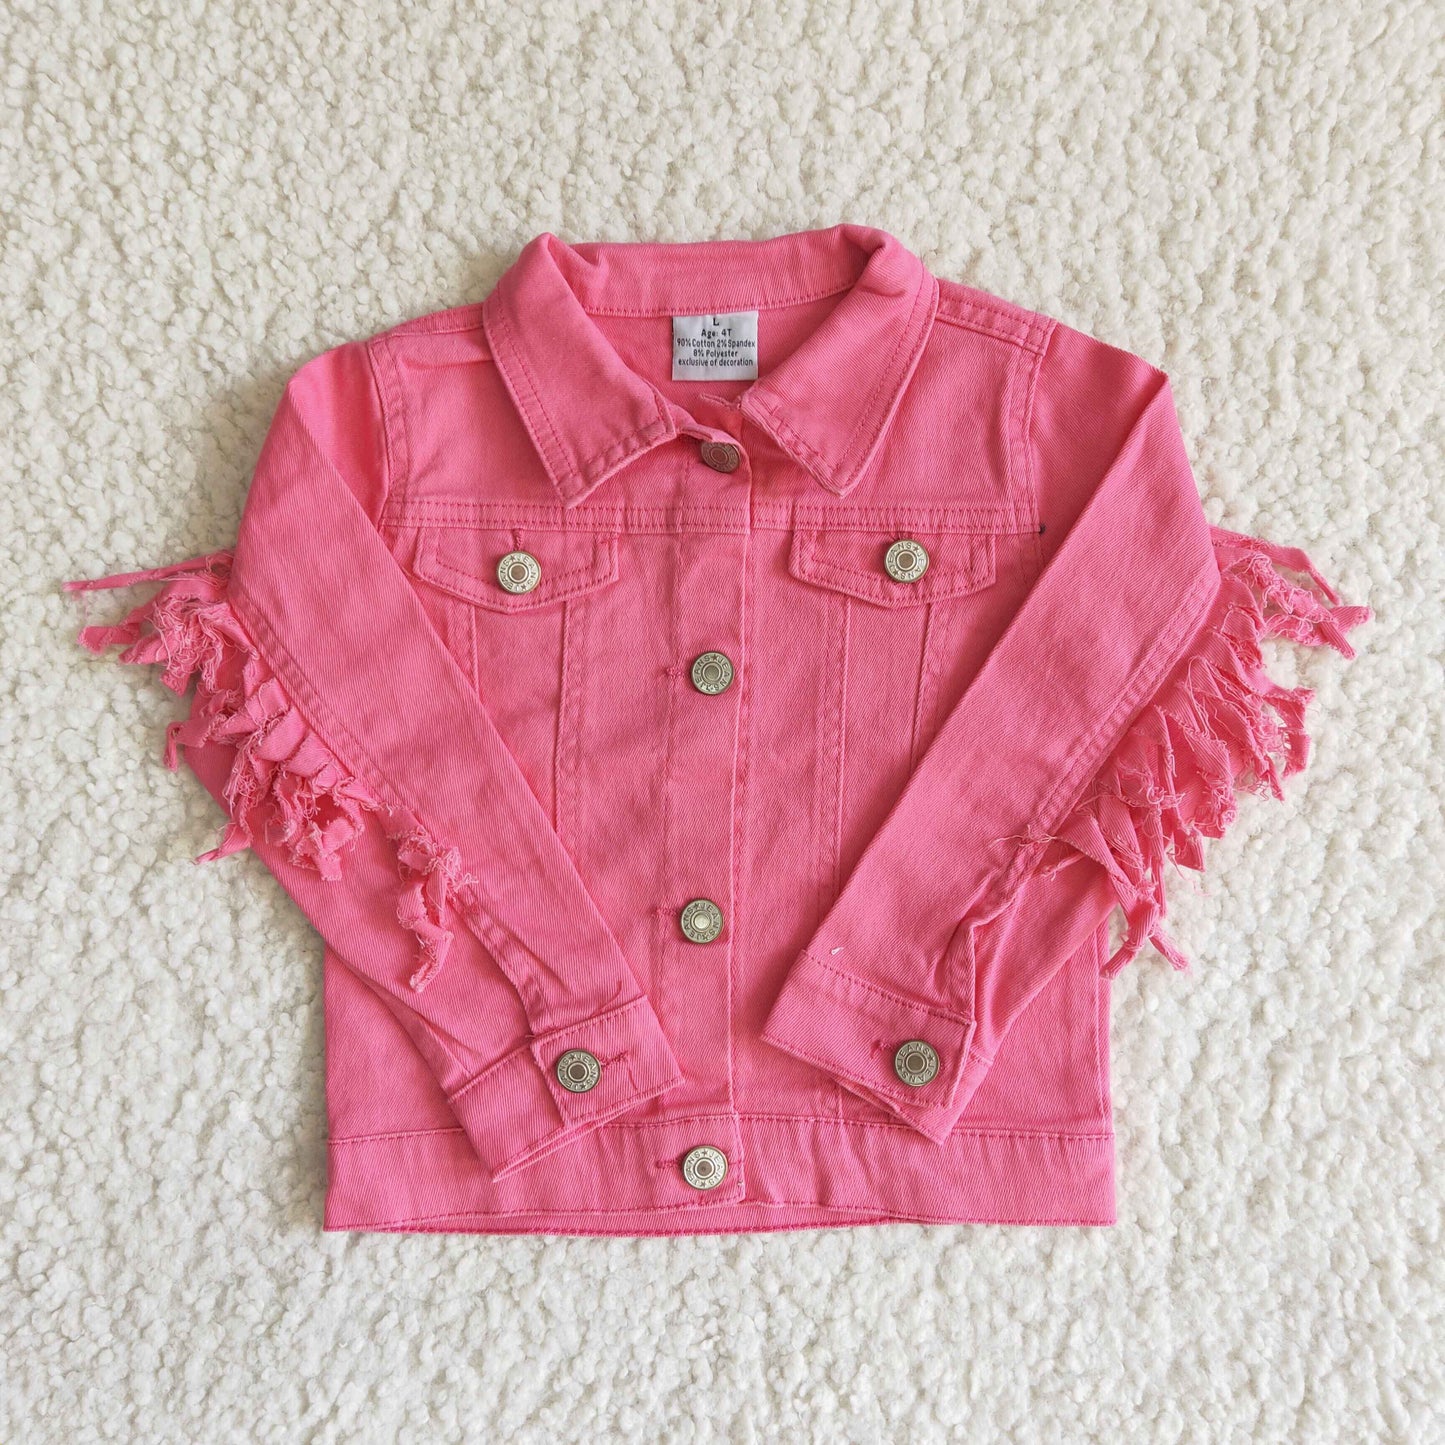 Hot pink color tassels girls spring denim jacket